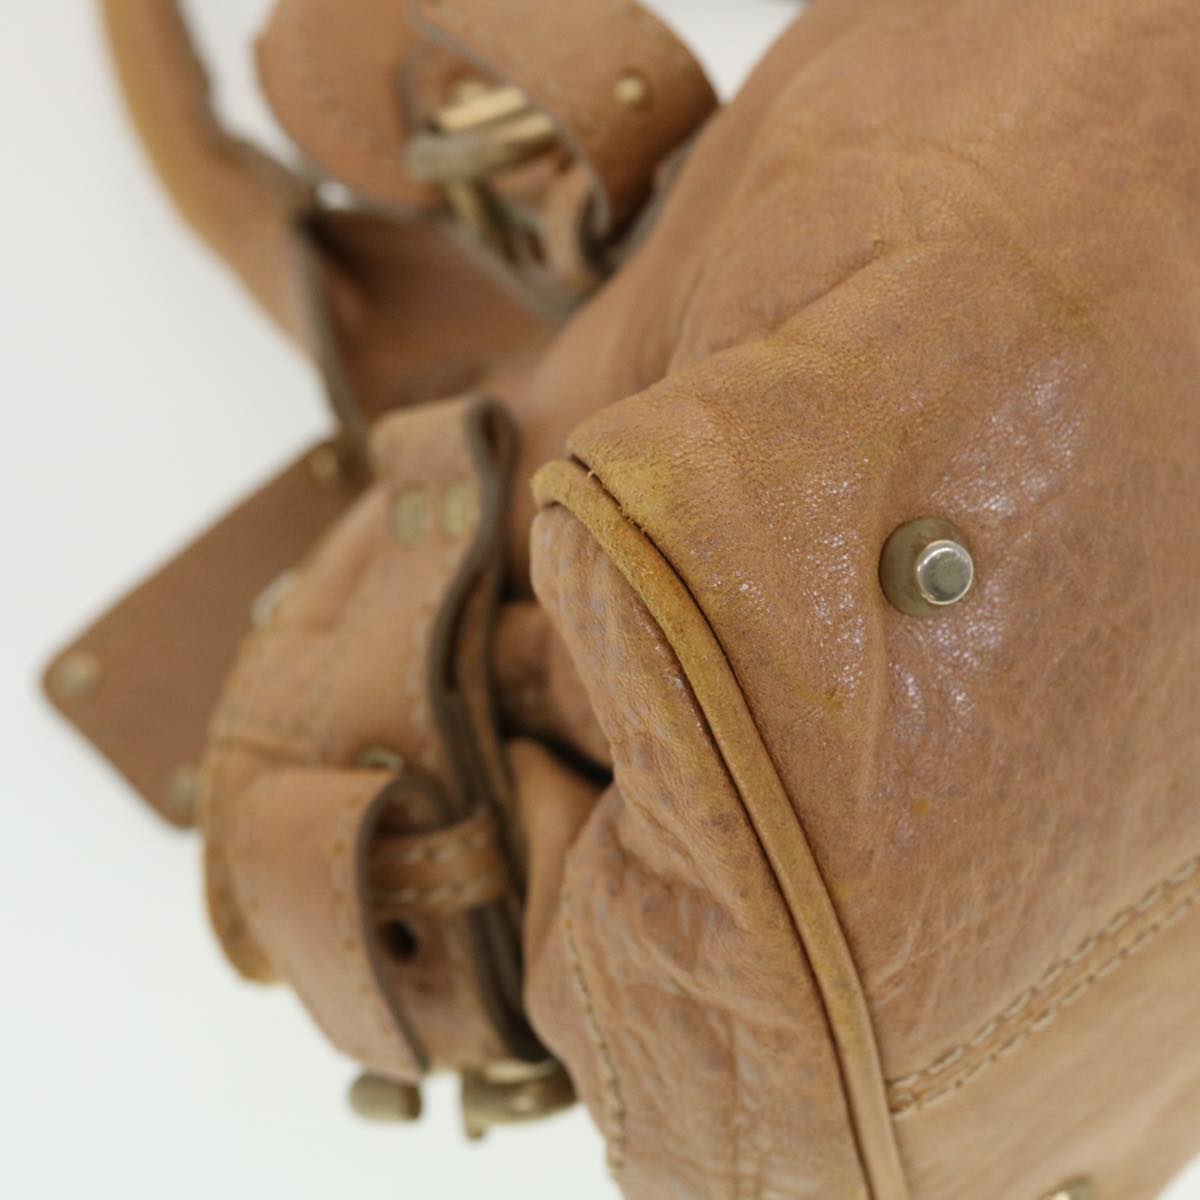 Chloe Paddington Hand Bag Leather Brown Auth bs5678